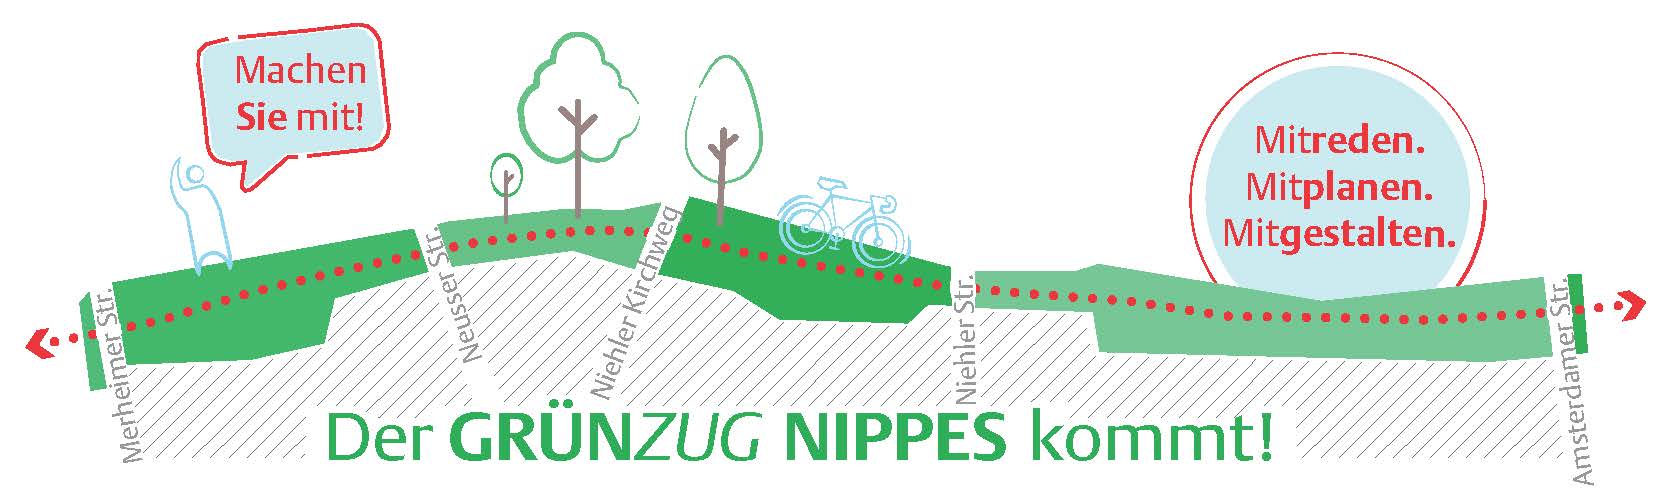 Dargestellt ist das Logo des GrünZug Nippes mit einem Schriftzug sowie Bäumen und einem Radweg.